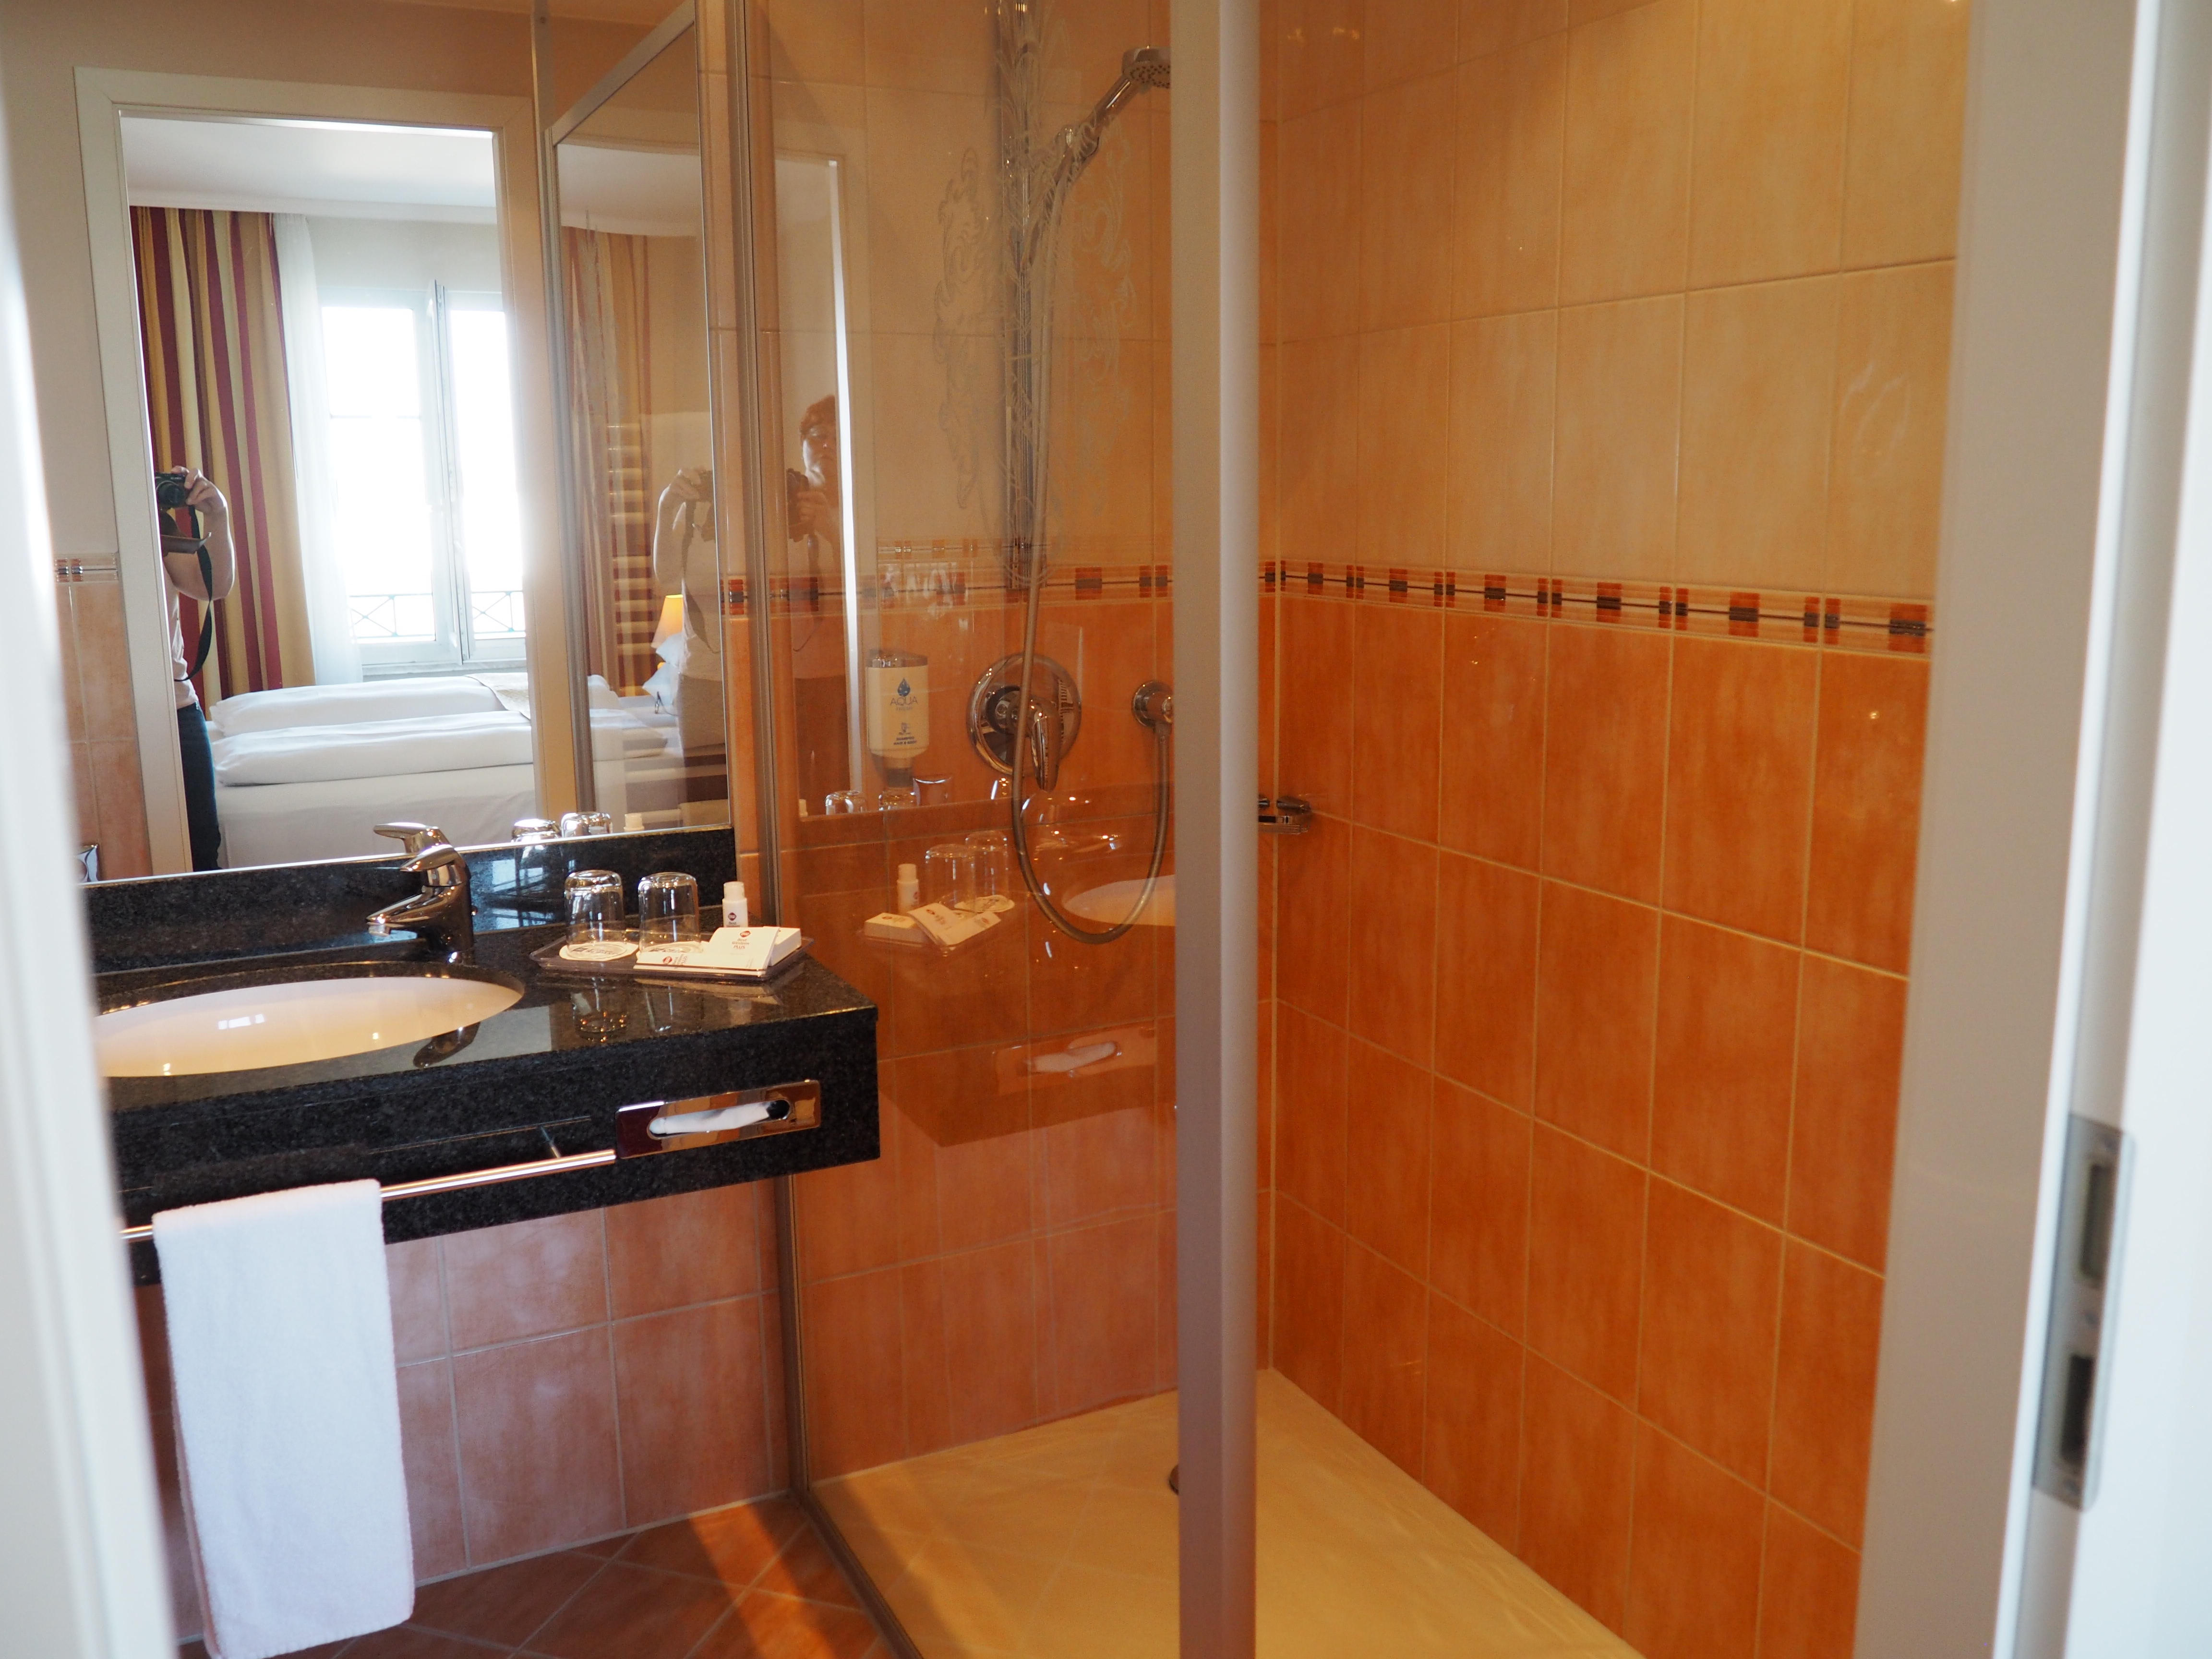 Unser Badezimmer im Best Western Hotel Erb in Parsdorf